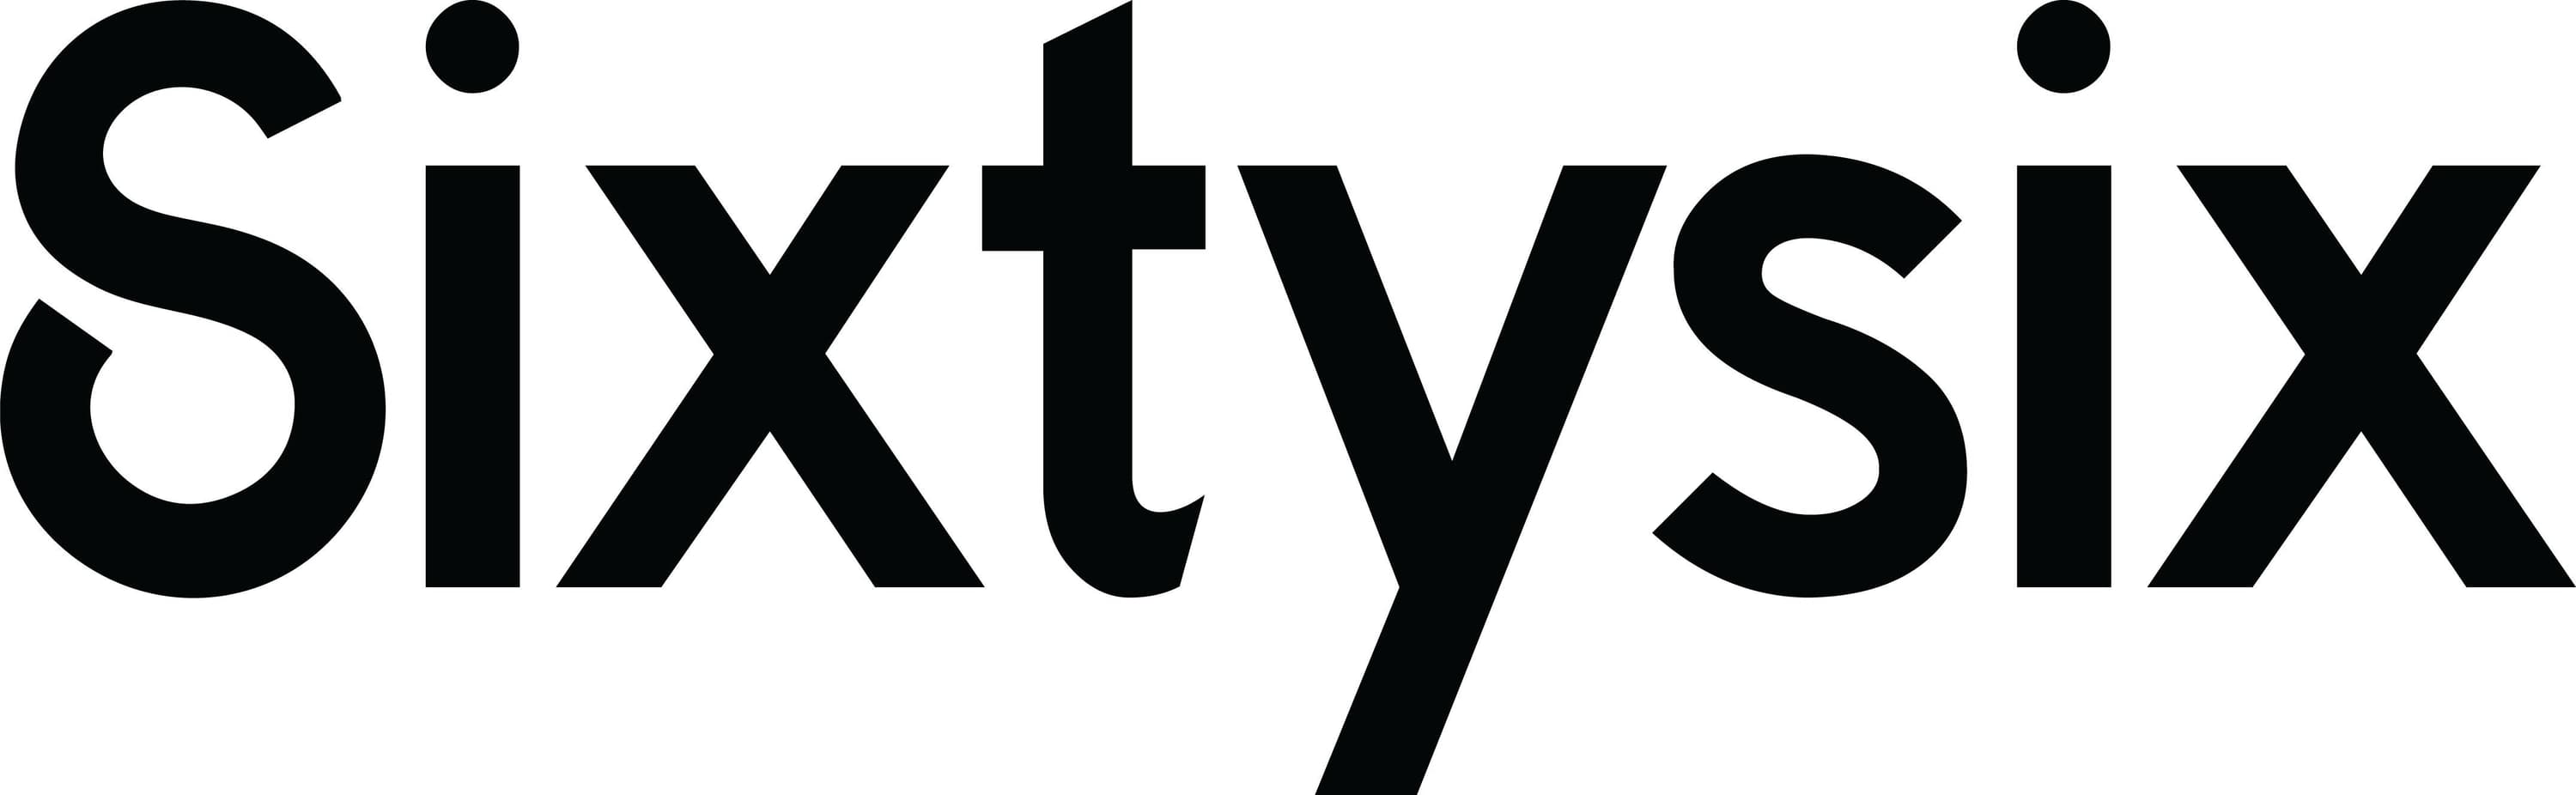 NC22 Sixtysix Logo